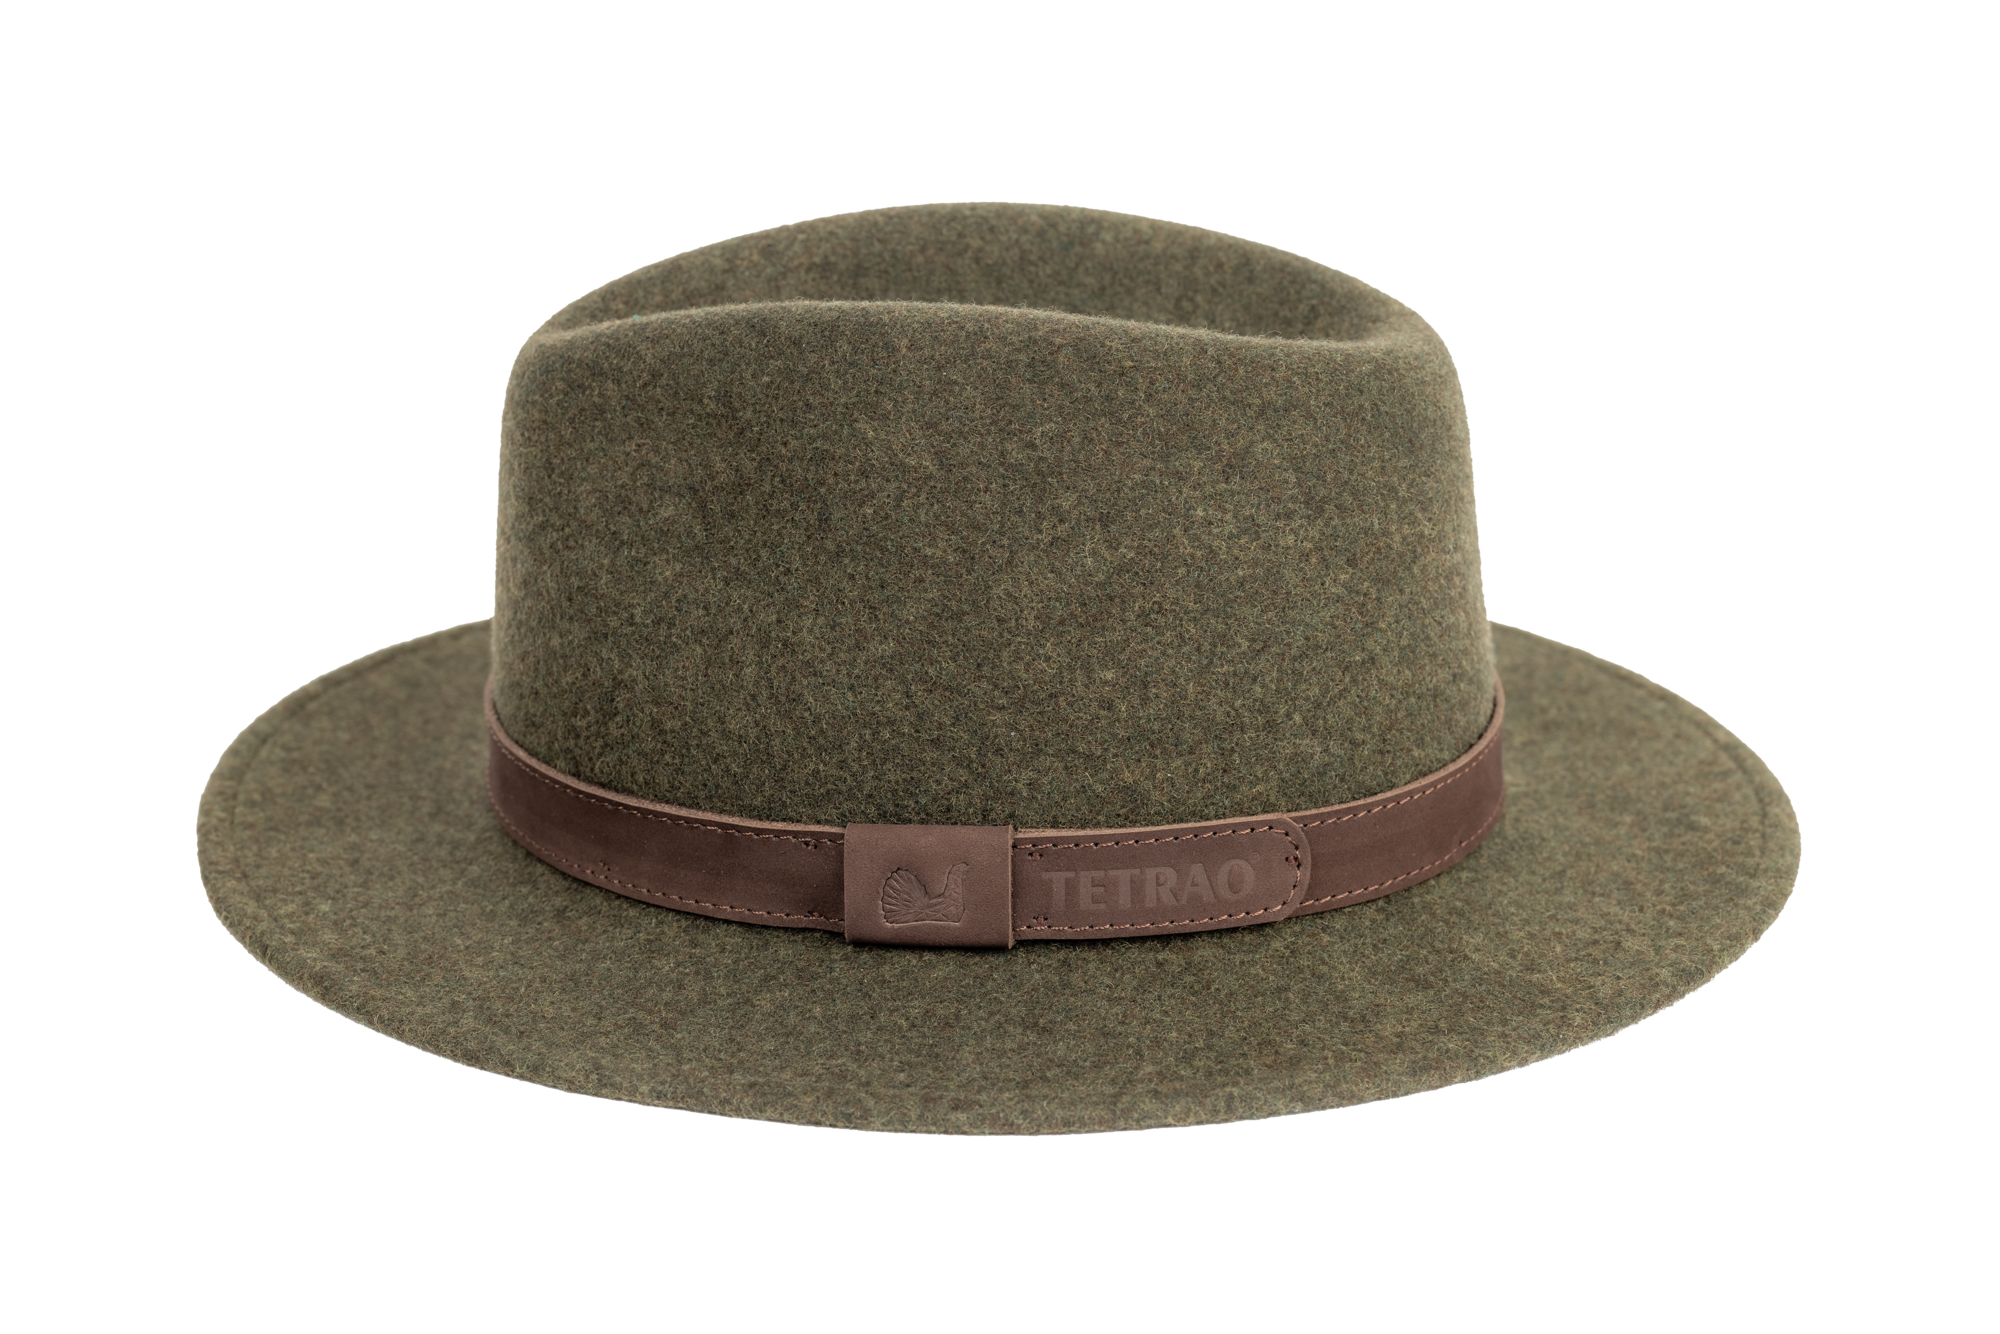 Poľovnícky klobúk TETRAO melanž UNI - zelený  59